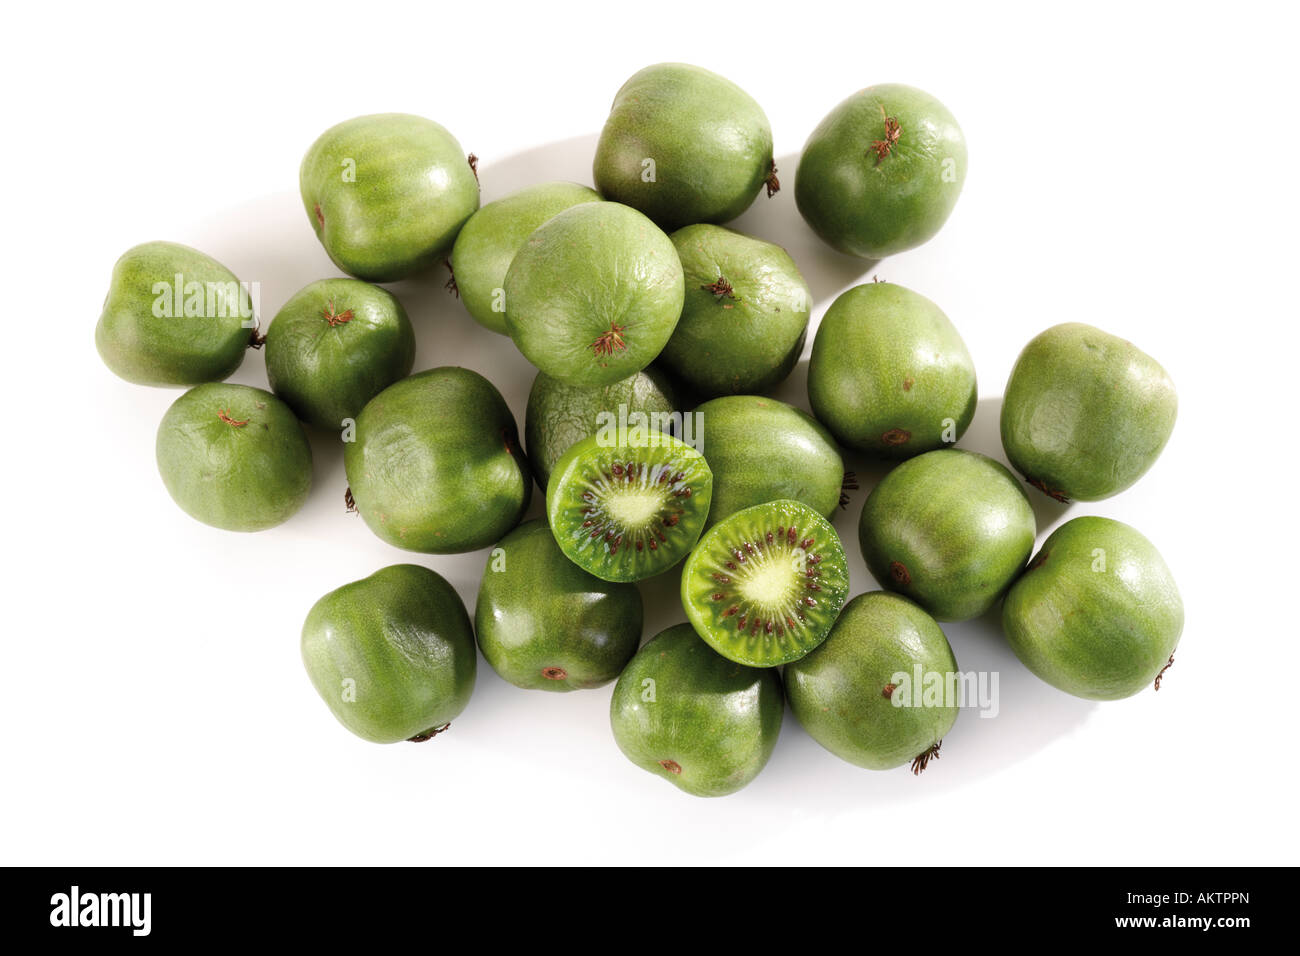 Whole and halved kiwi fruits, close-up Stock Photo